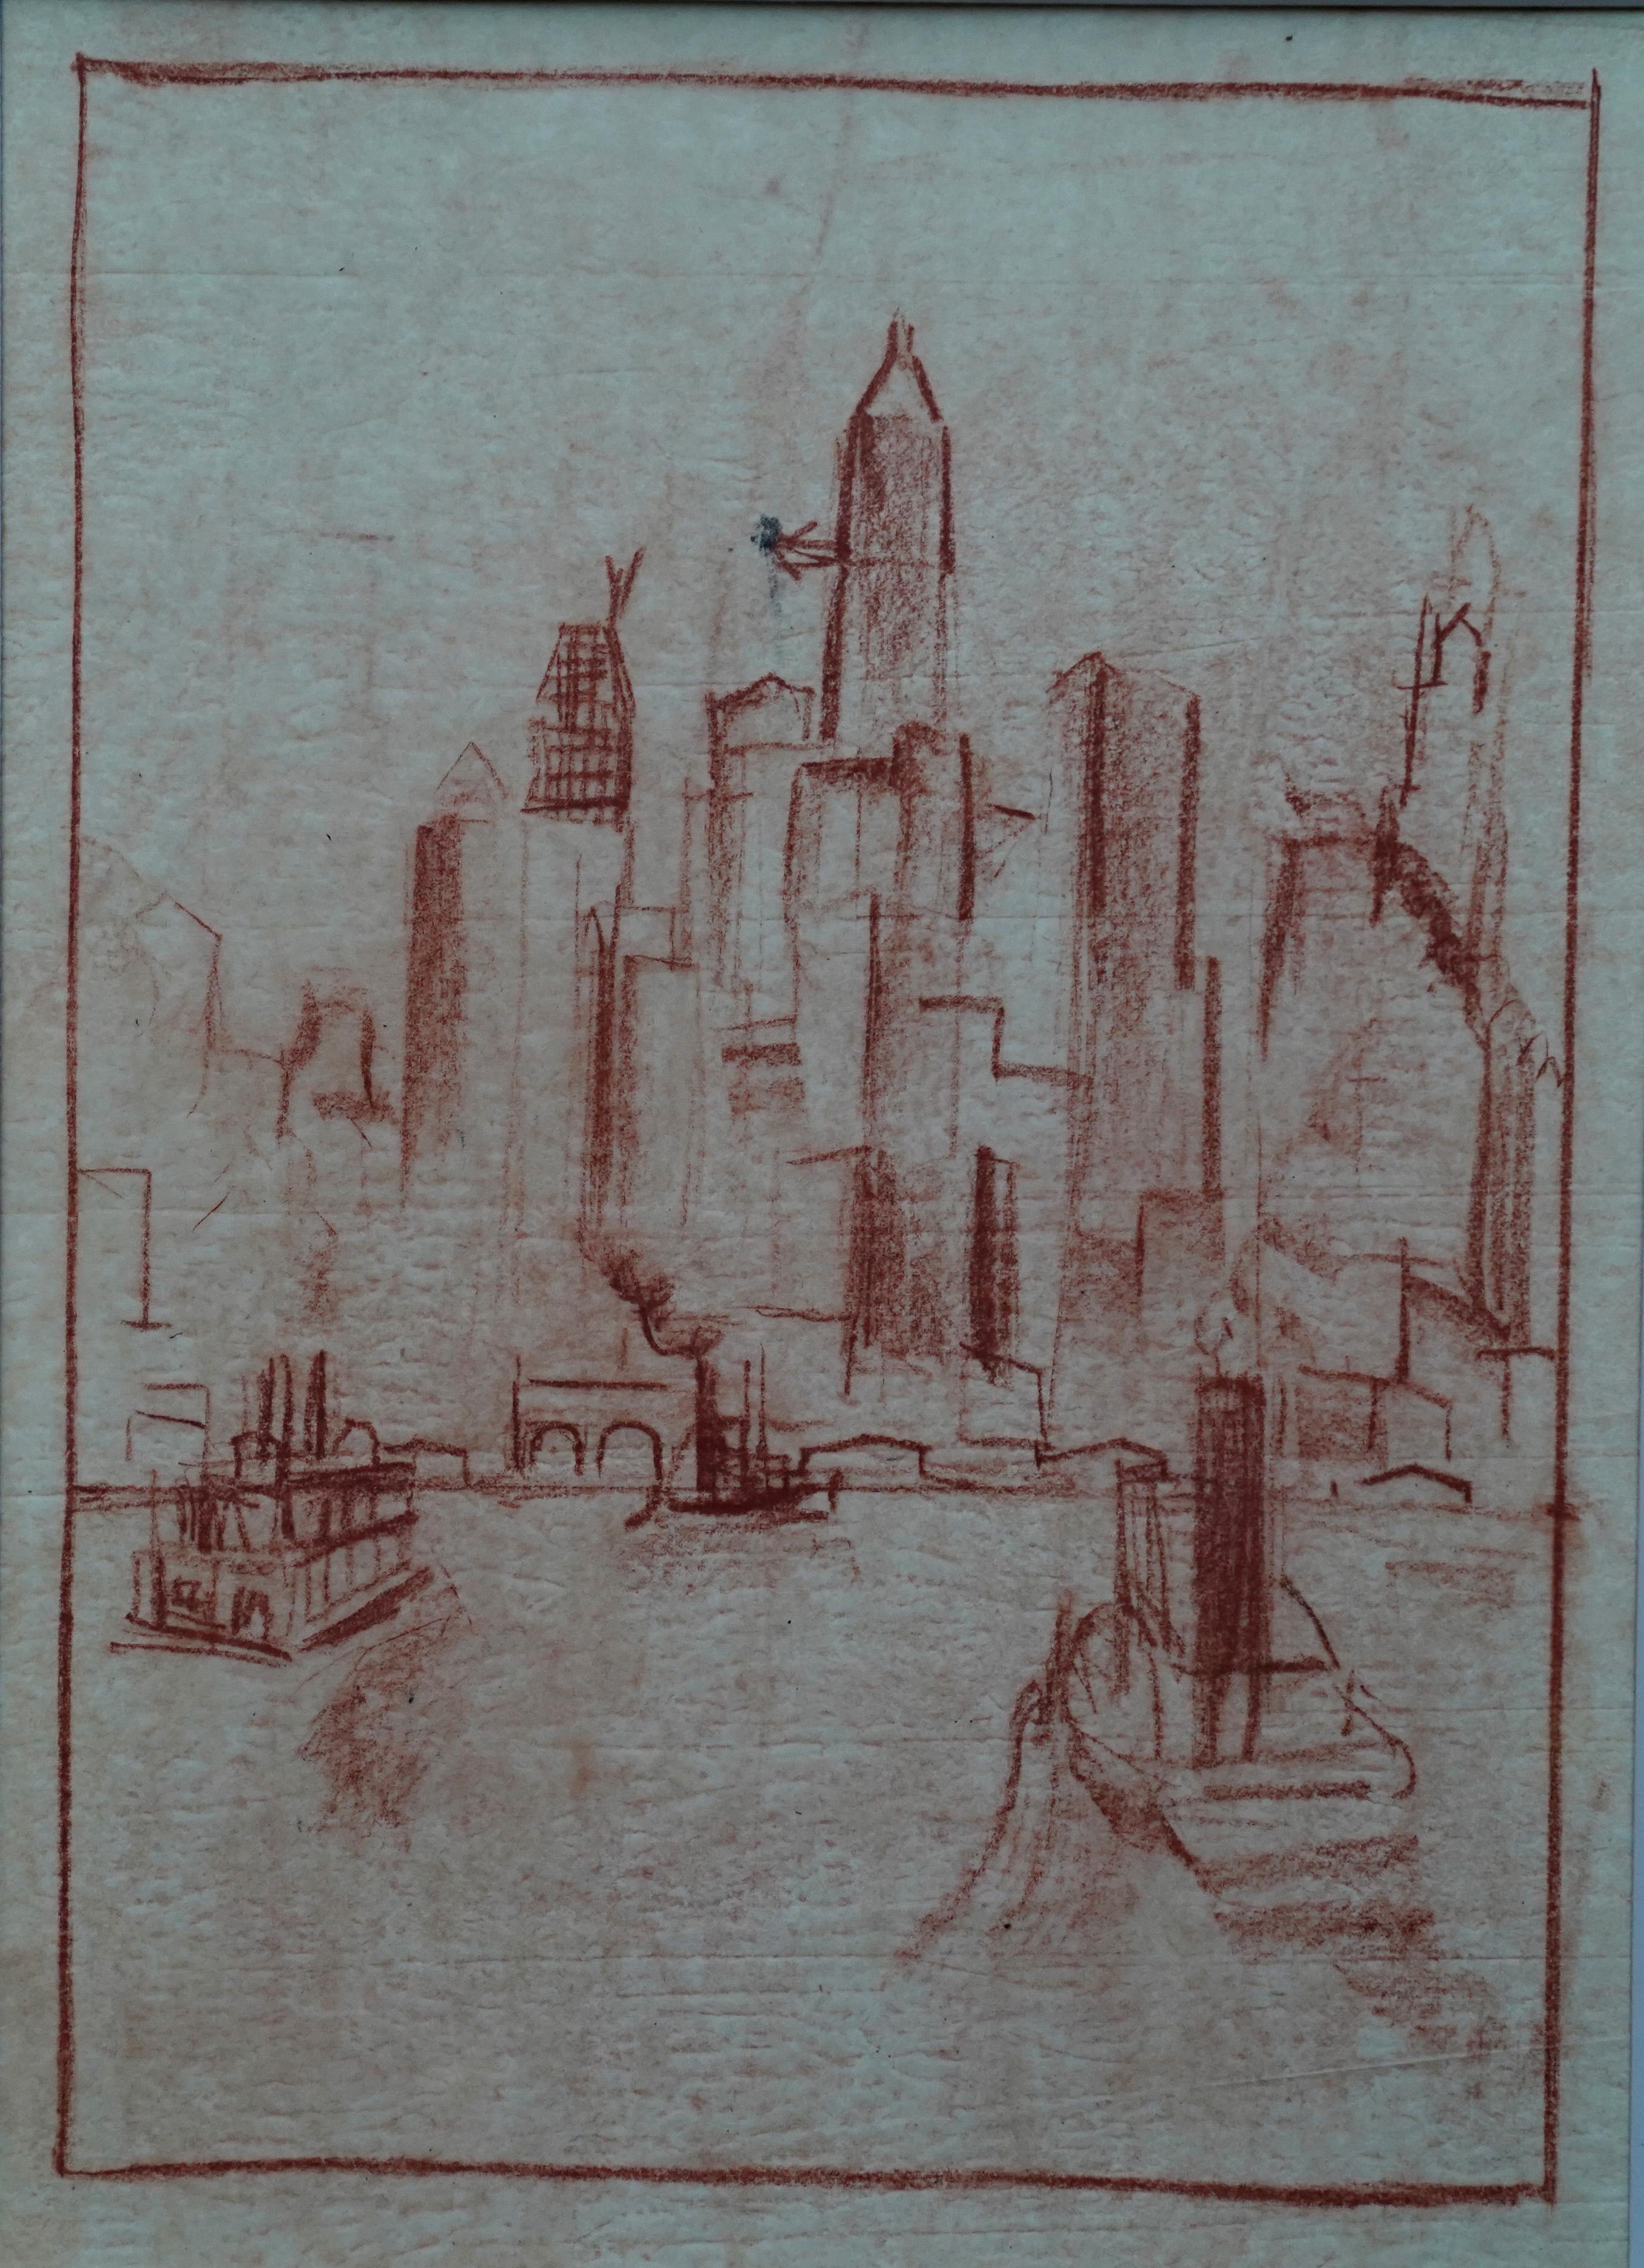 Manhattan from the River - dessin au crayon d'art néerlandais des années 1920 dans la ville de New York - Art de Adriaan Lubbers